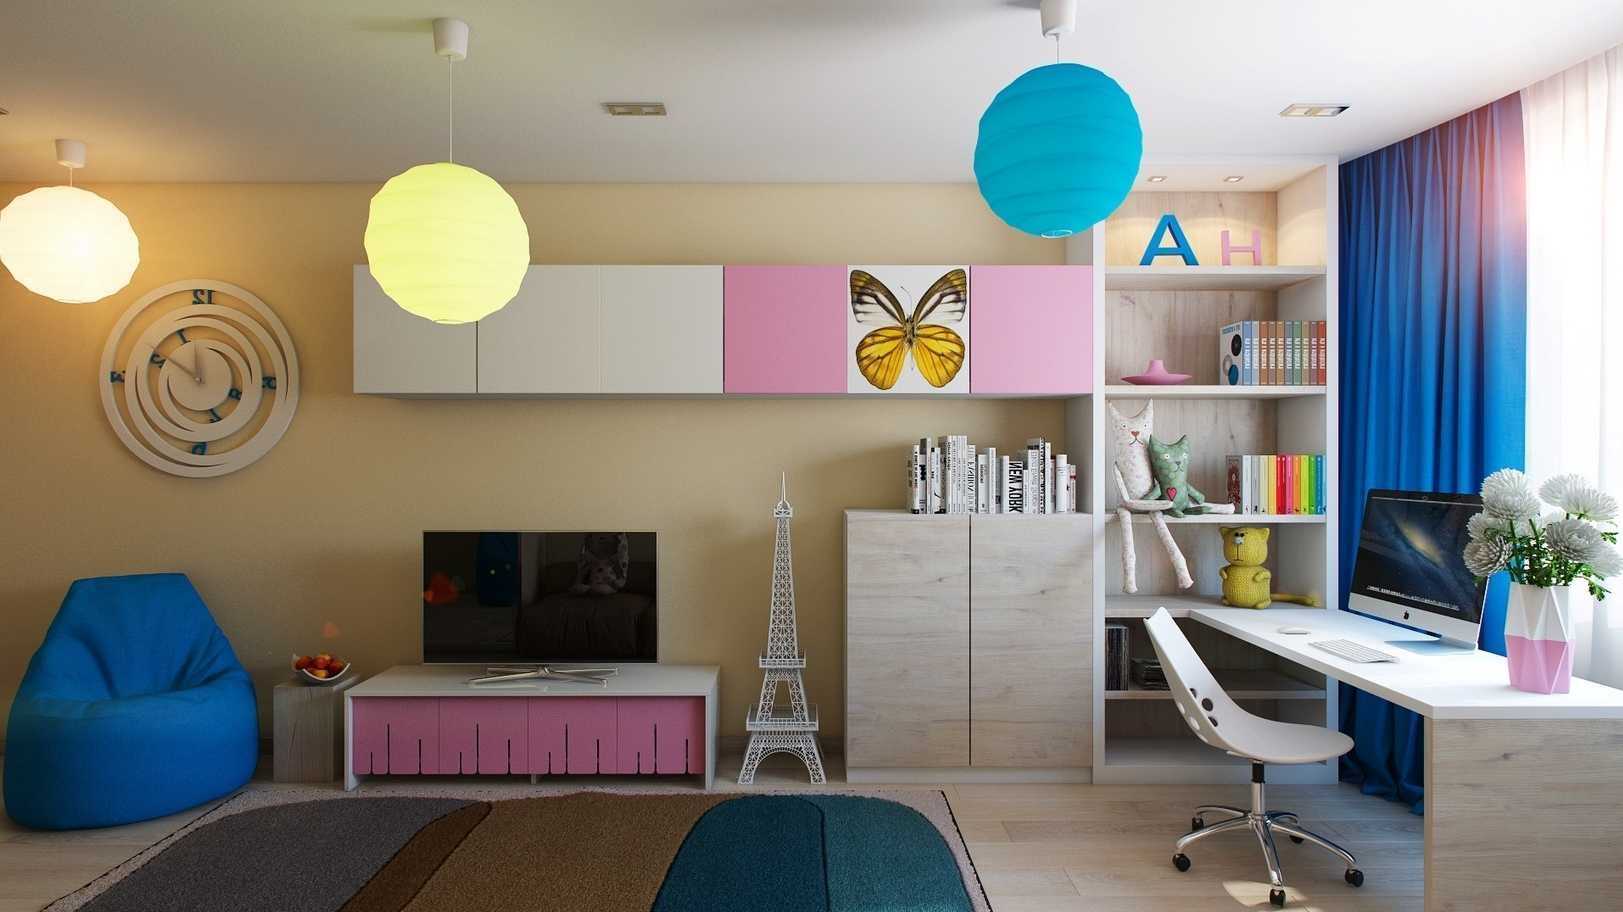 Освещение в детской комнате, как организовать правильную подсветку, особенности комнаты с натяжным потолкам - 23 фото